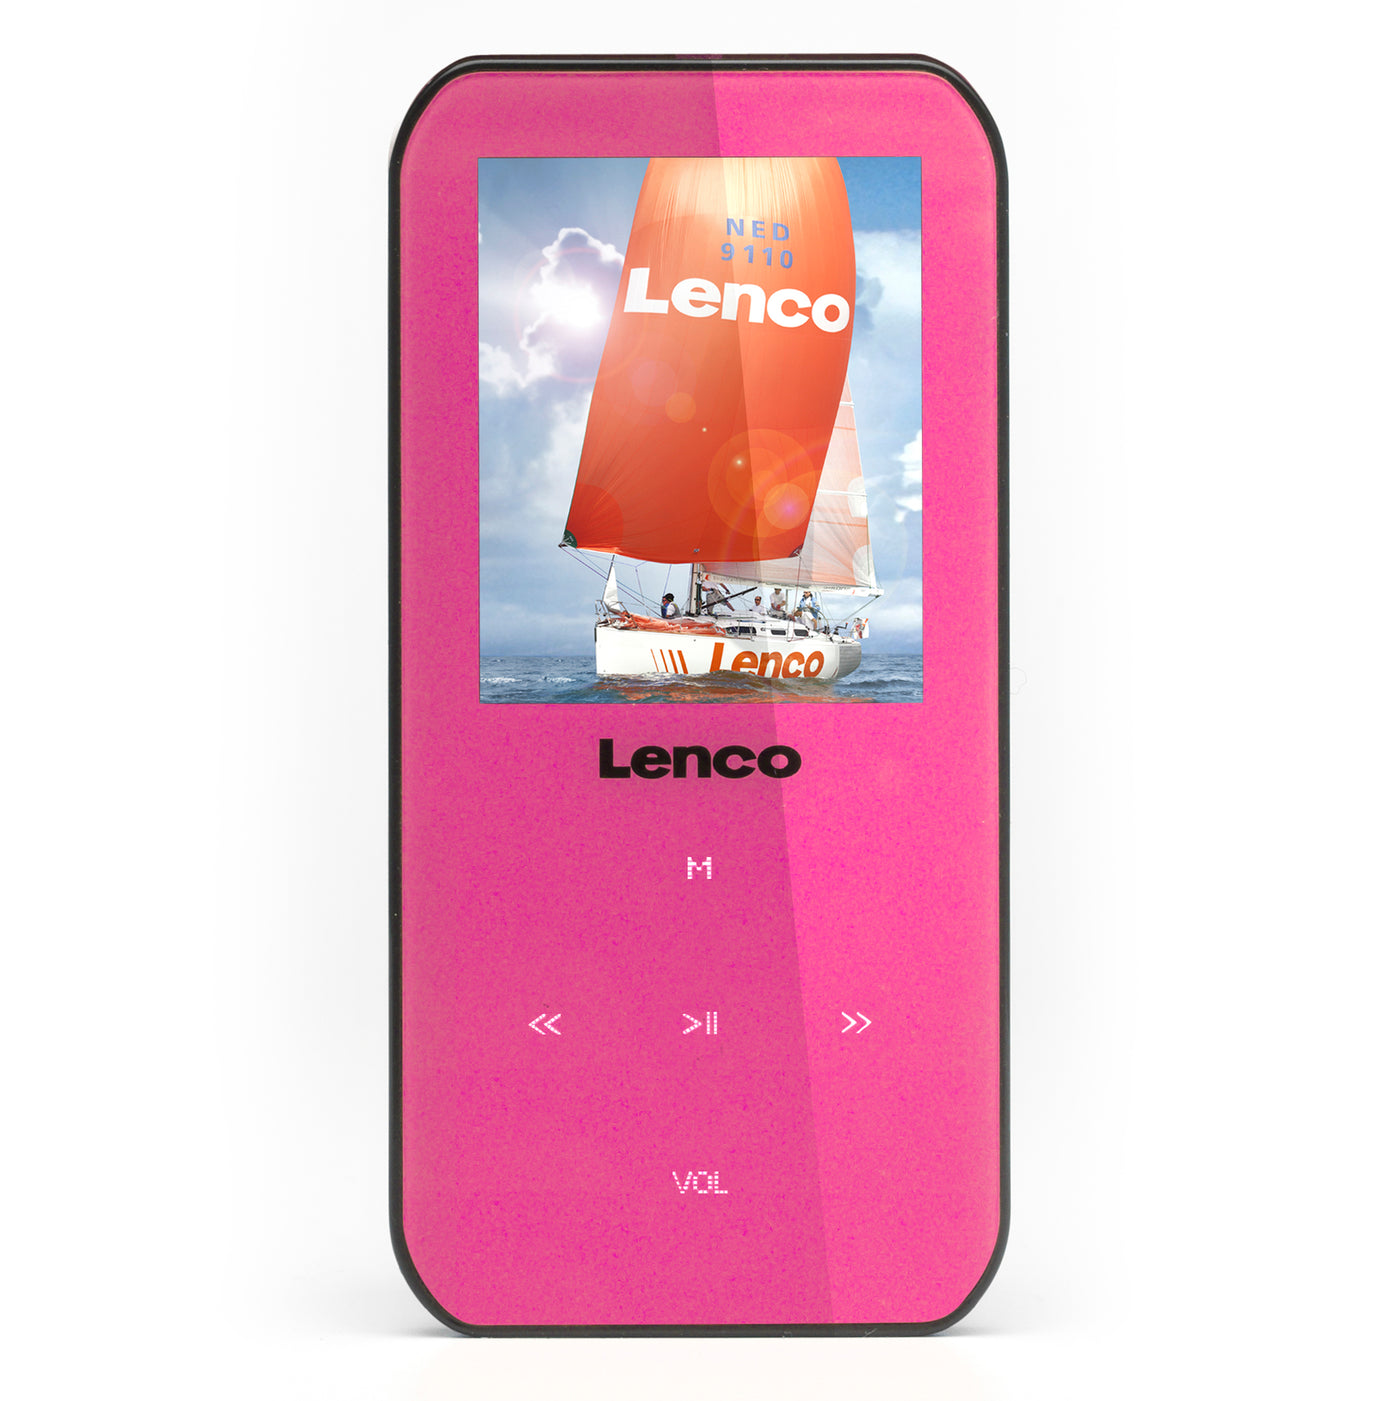 LENCO Xemio-655 Różowy - Odtwarzacz MP3/MP4 z pamięcią 4GB - Różowy